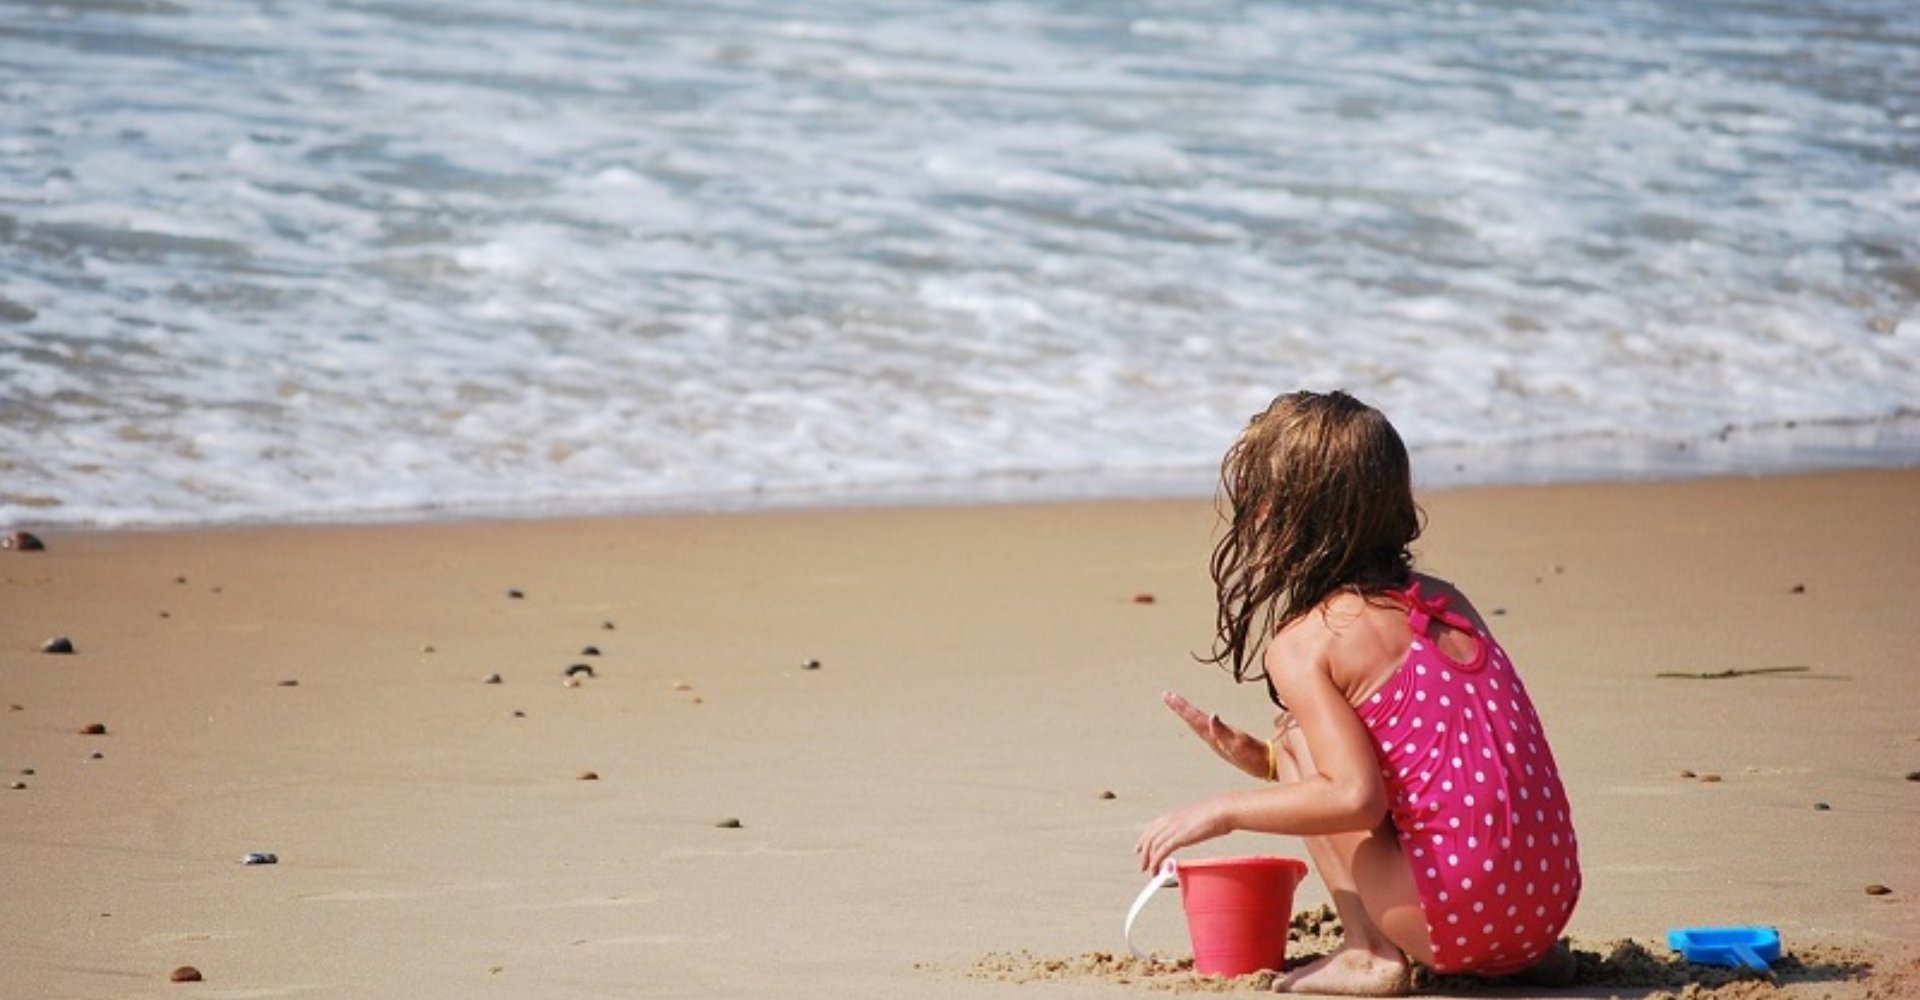 La playa y niños en el mar de Toscana